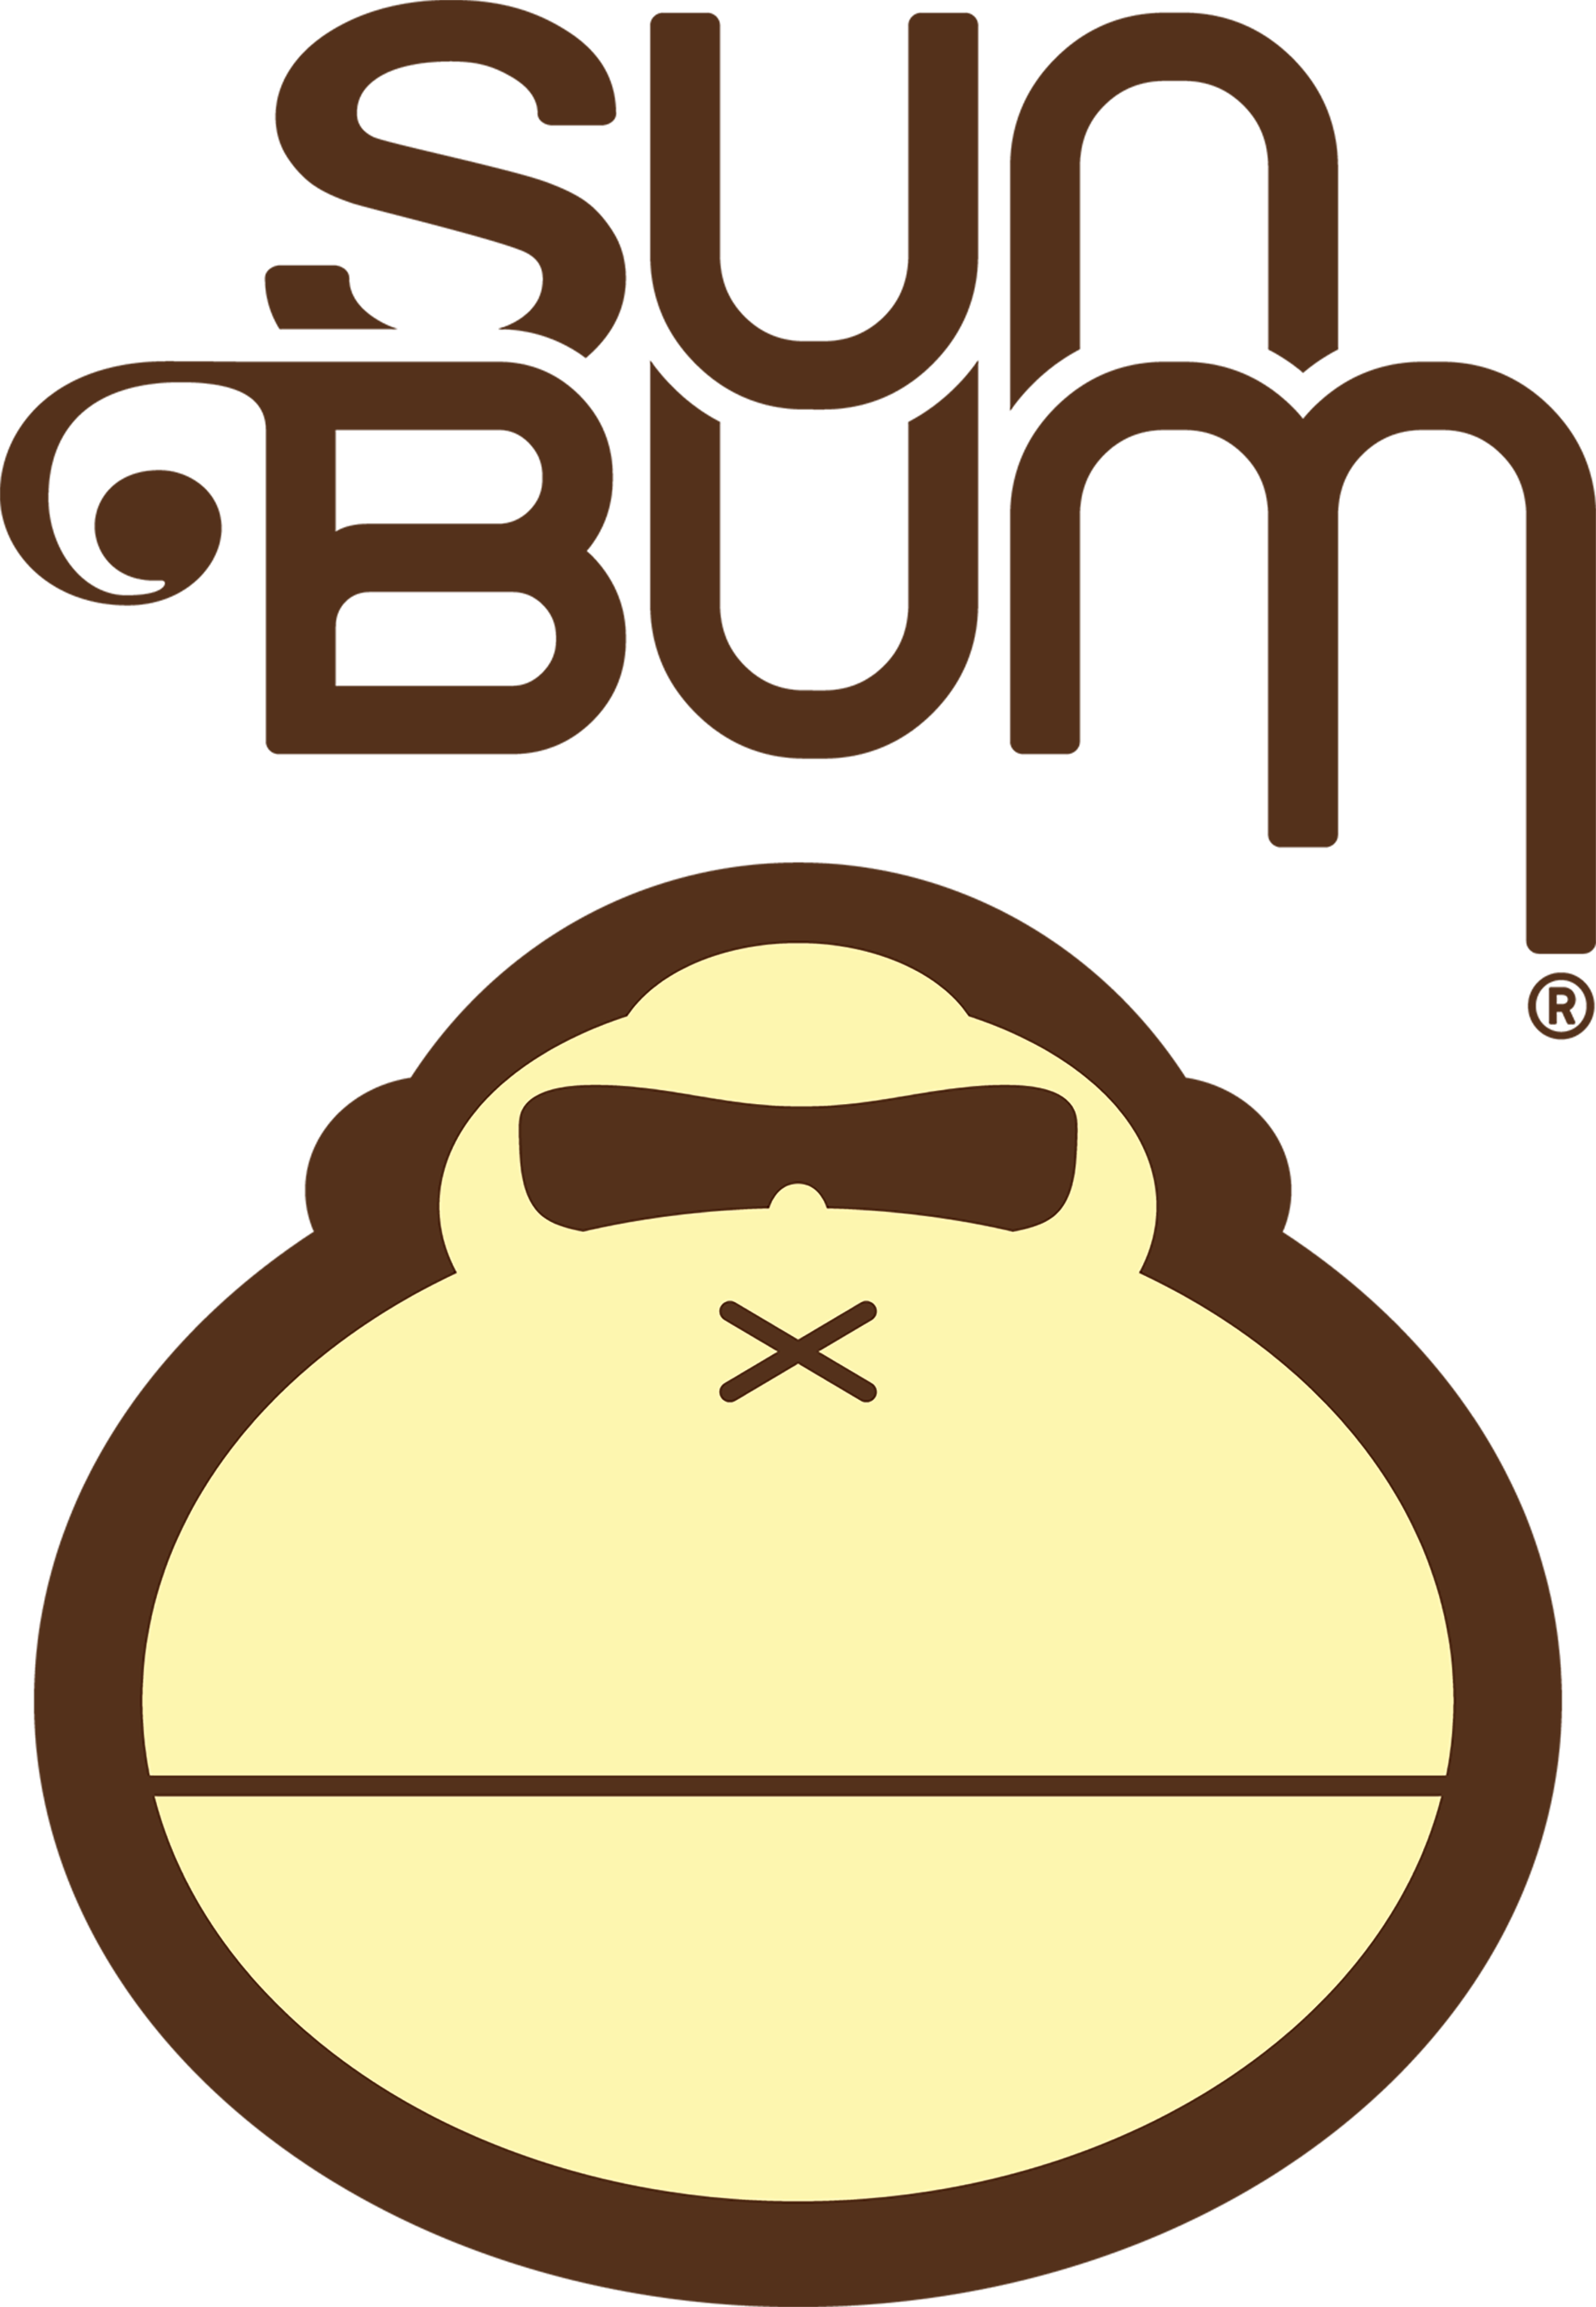 Sun Bum - Sun Bum Sunscreen Logo (1920x2775)